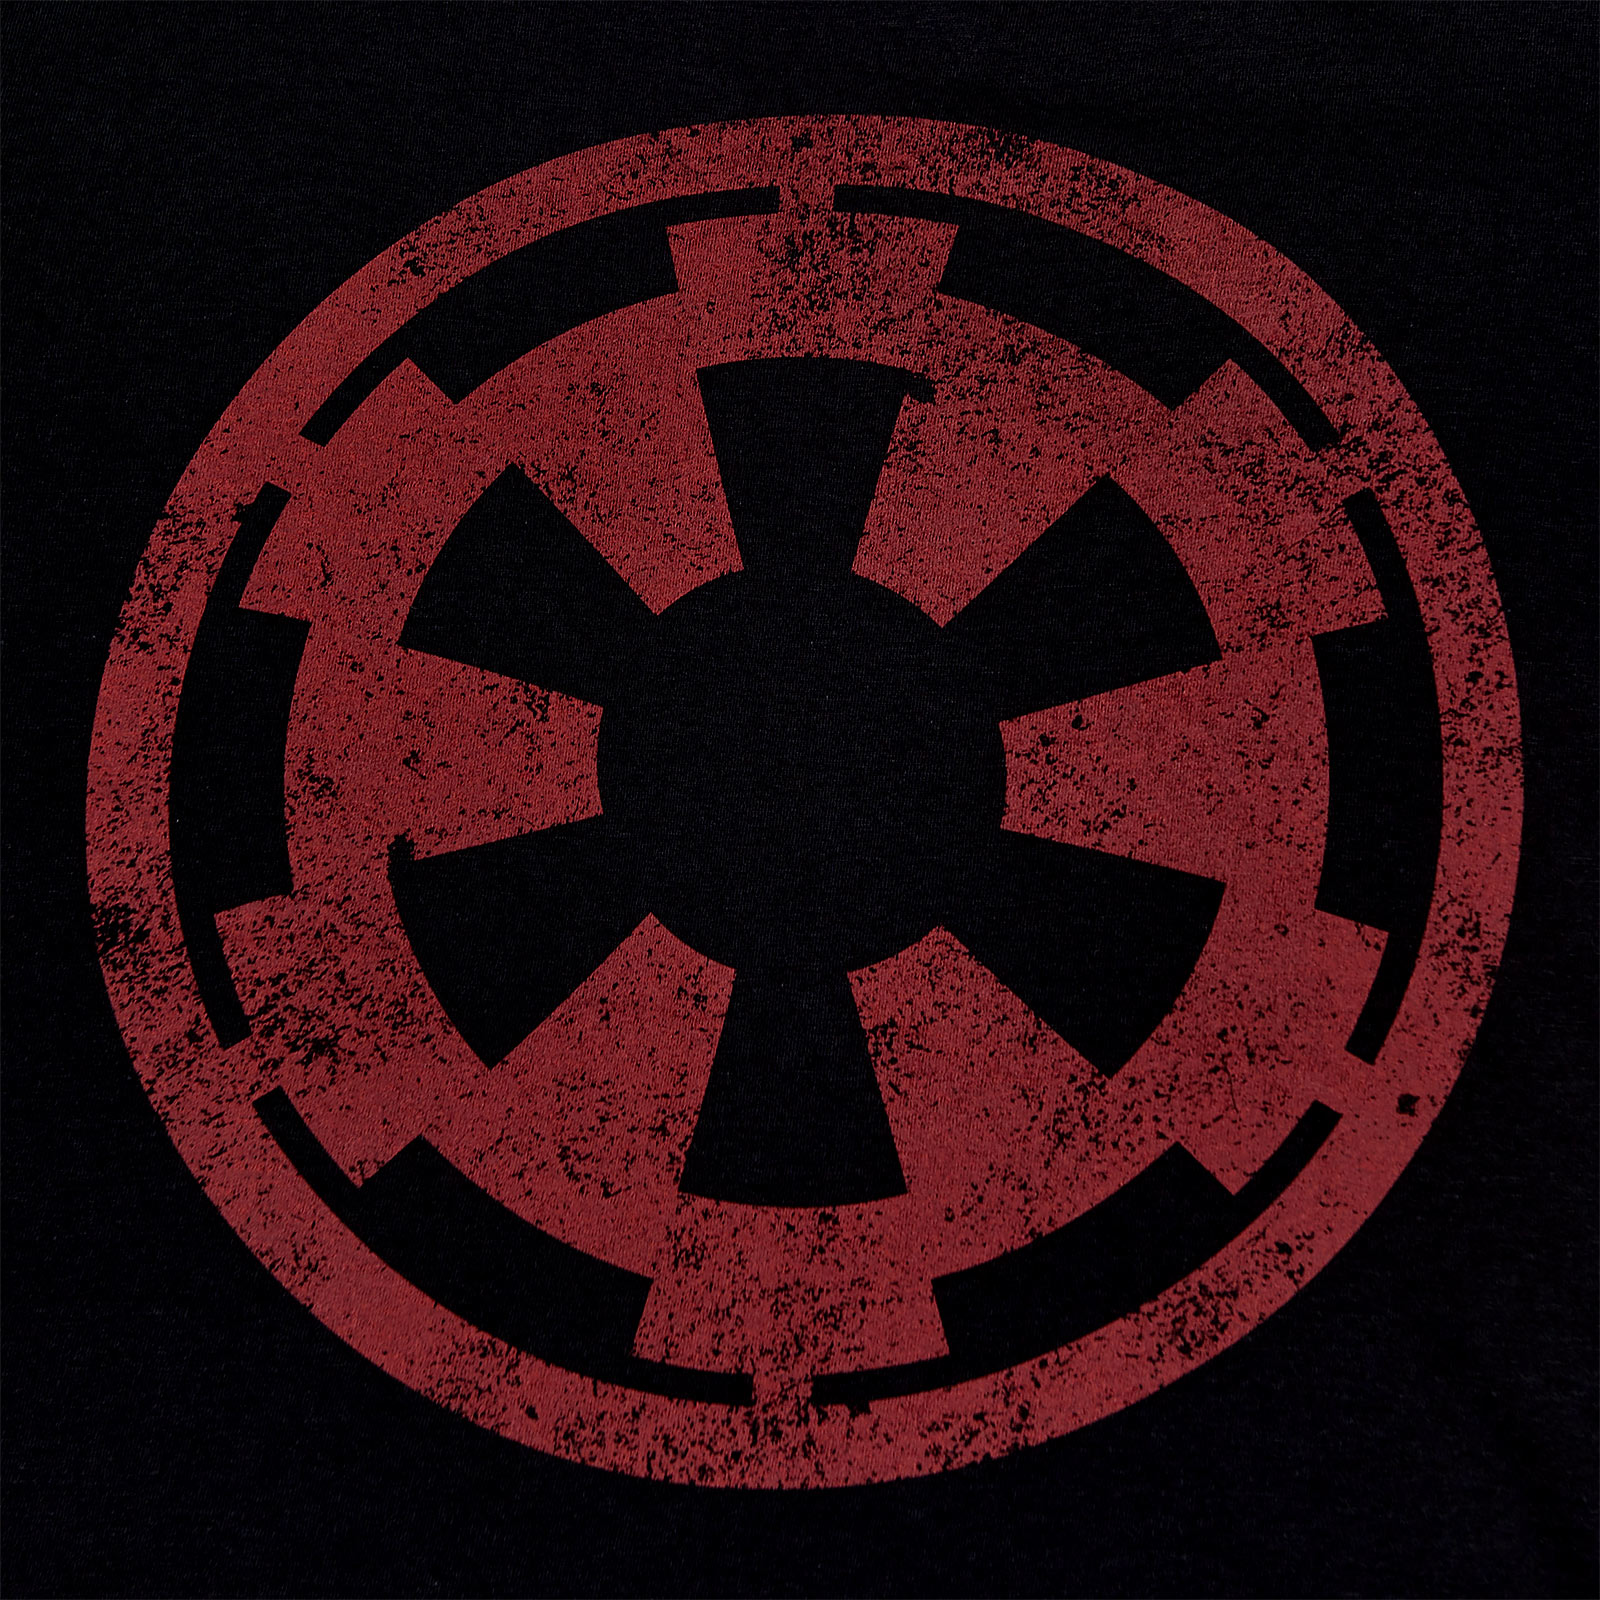 Star Wars - Galactisch Empire Logo T-shirt zwart